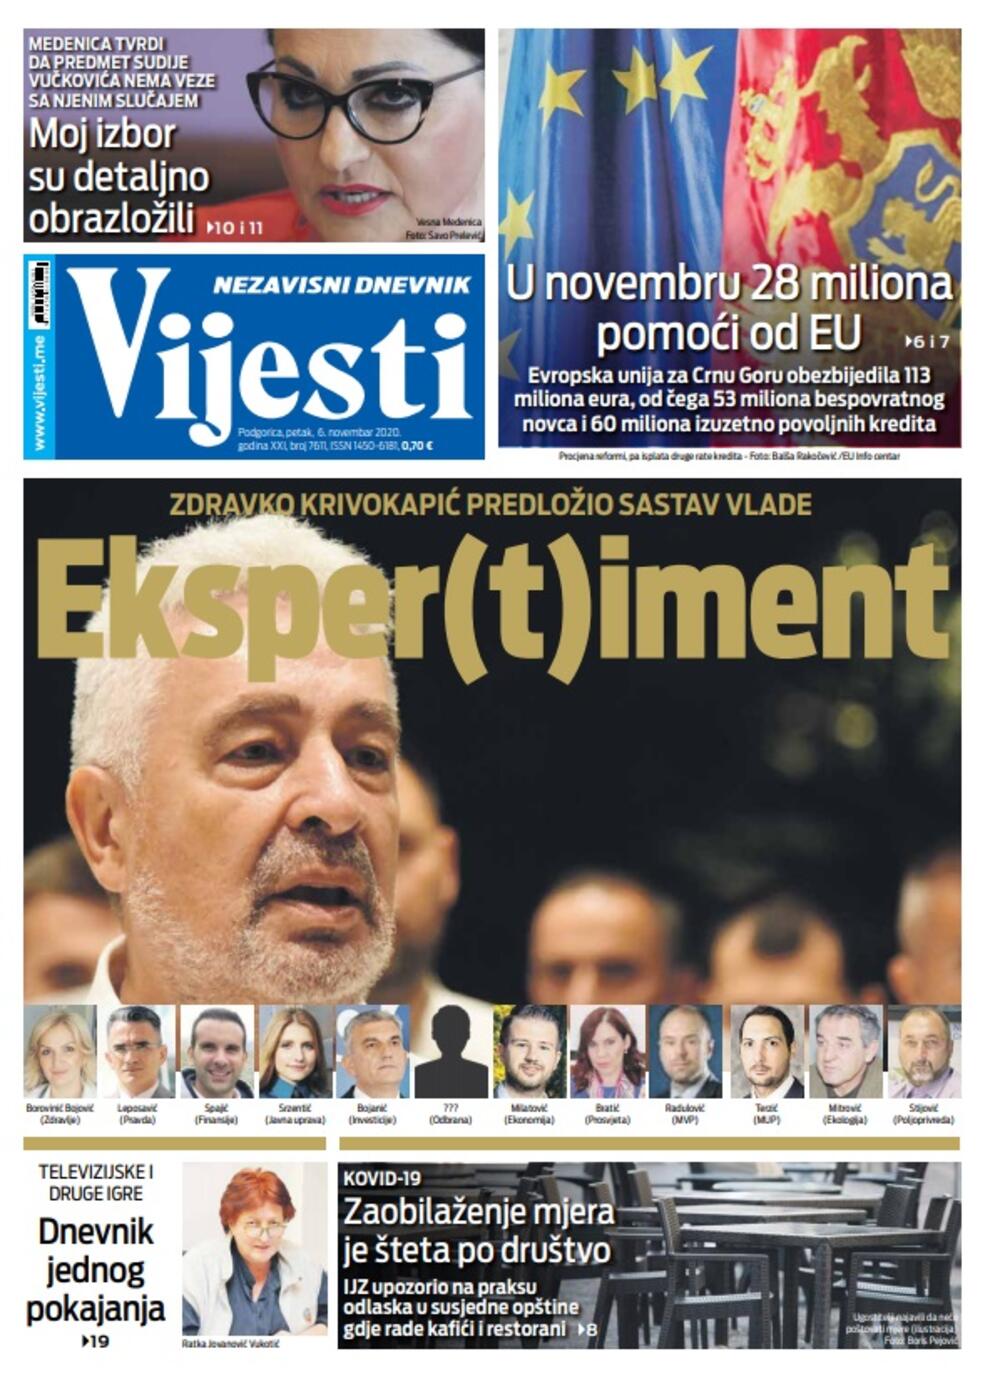 Naslovna strana "Vijesti" za 6.11.2020., Foto: Vijesti